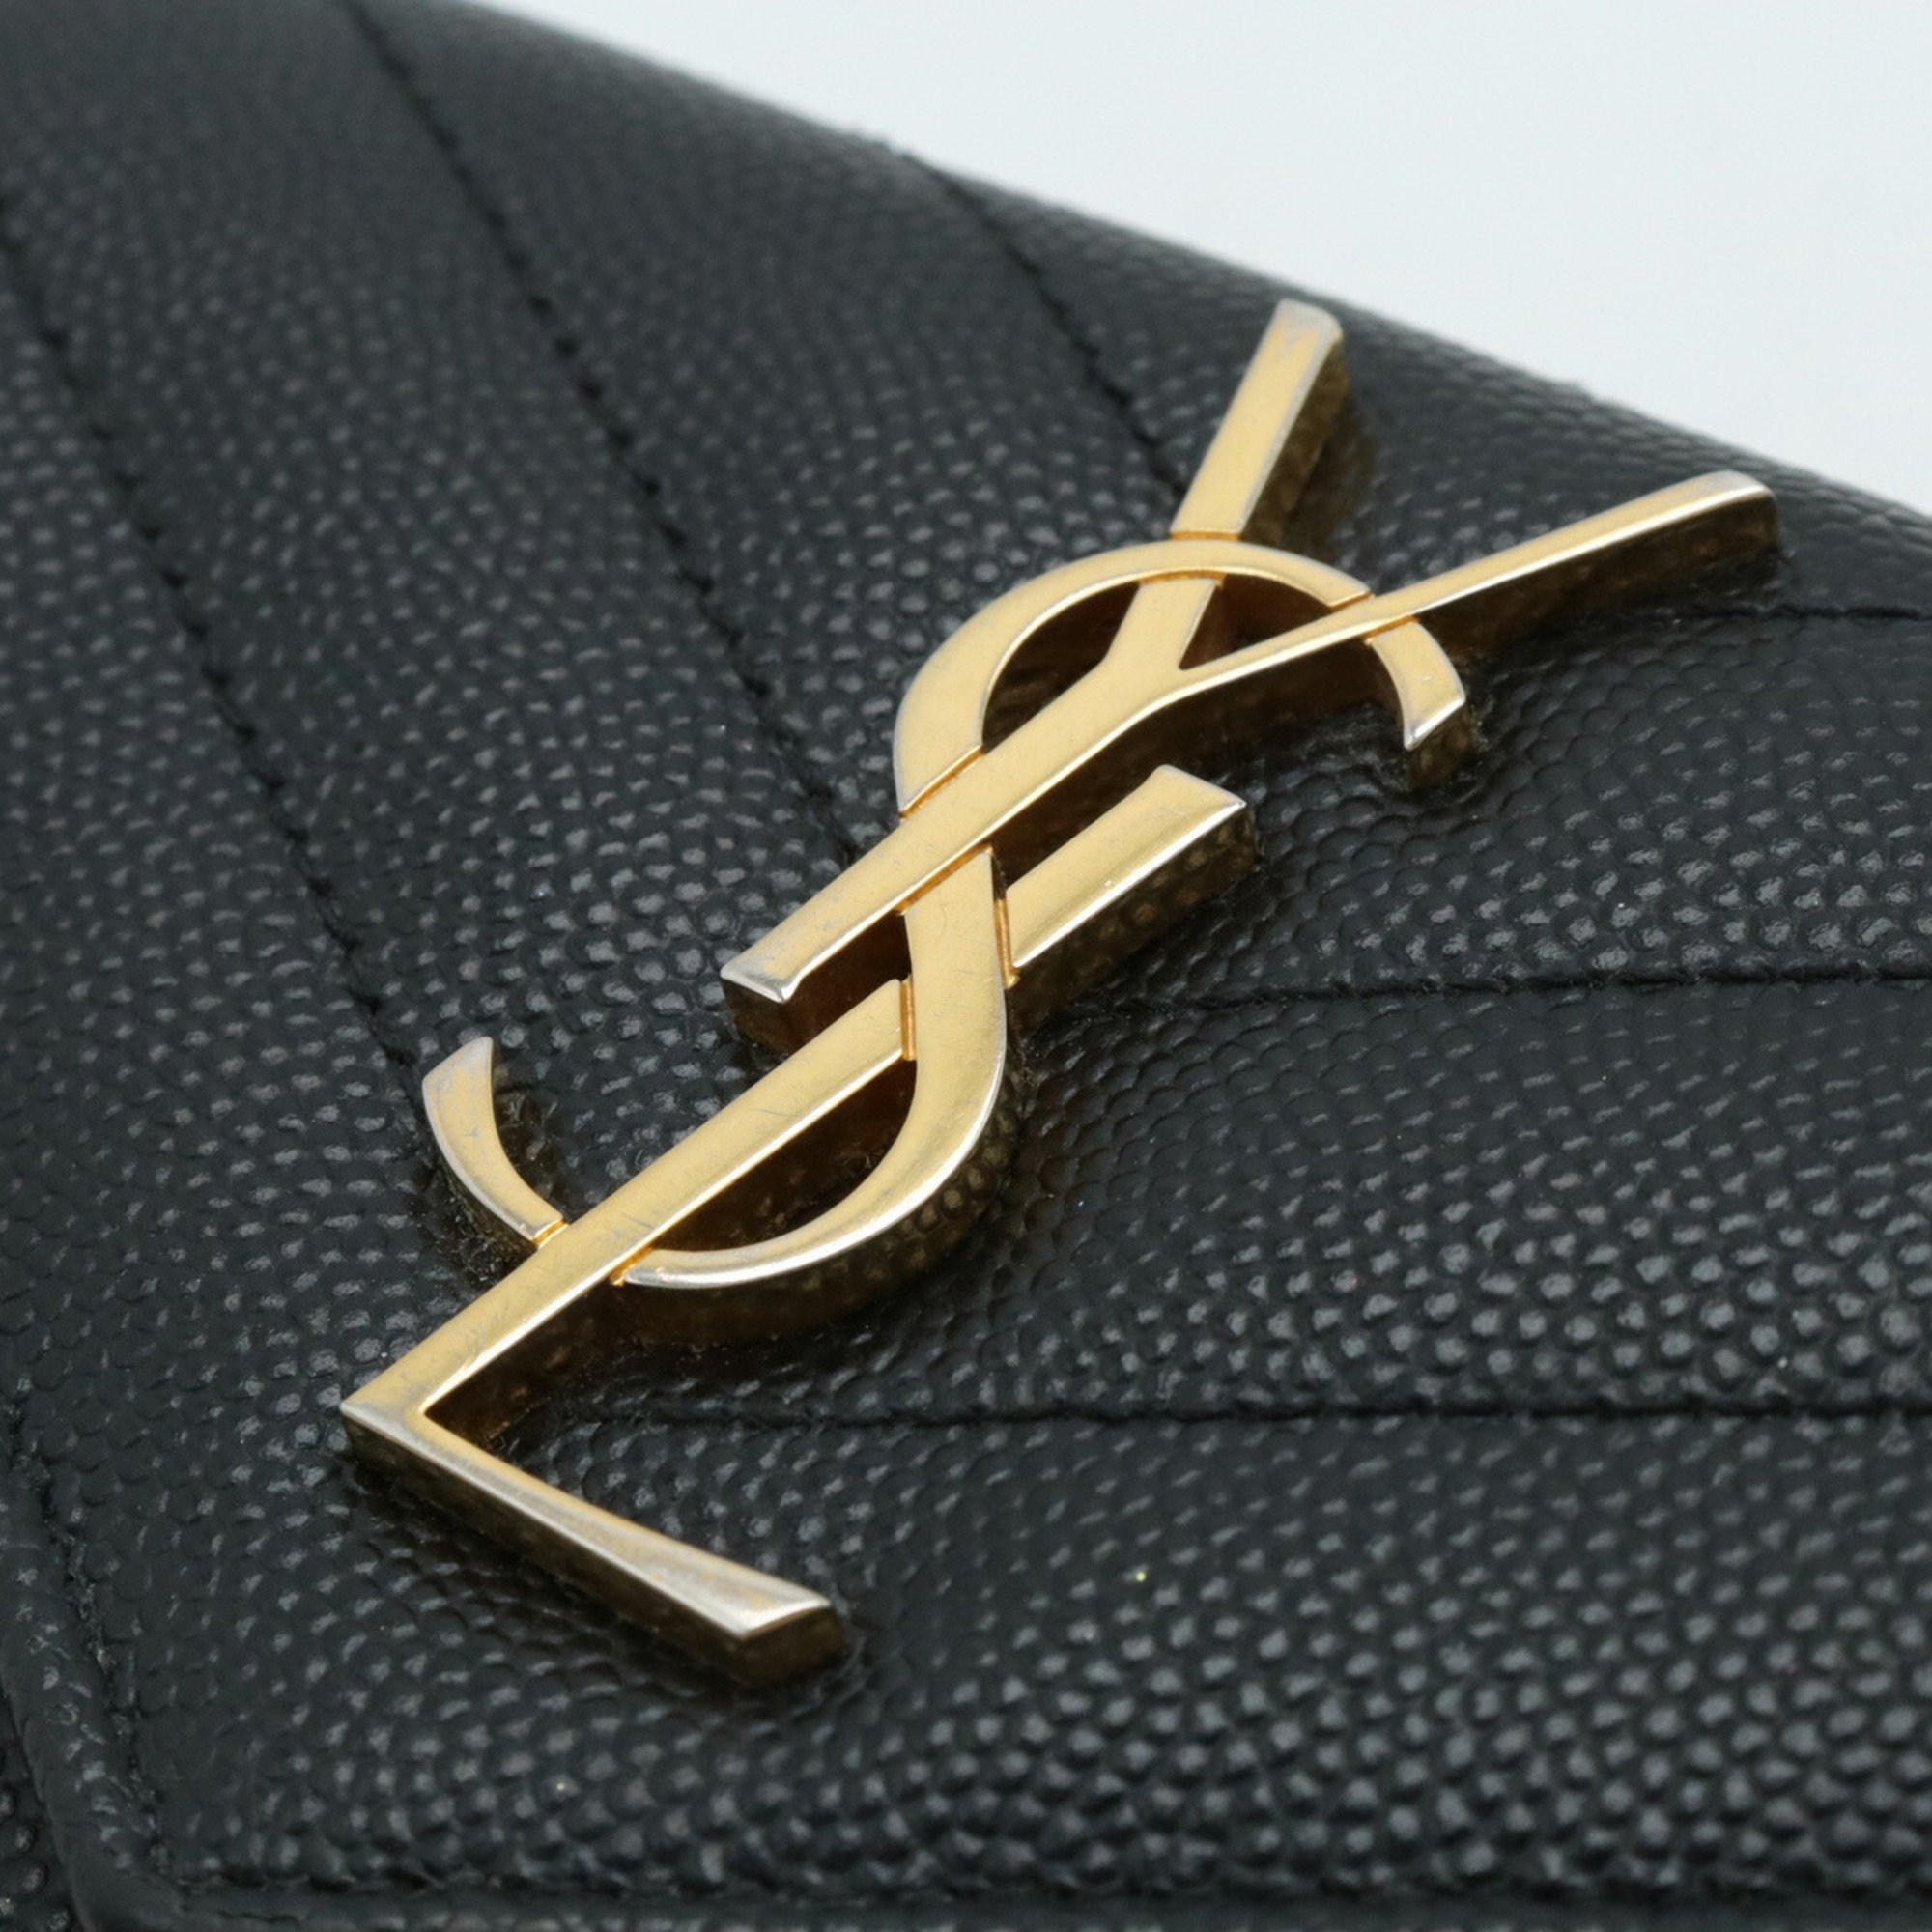 SAINT LAURENT PARIS YSL Yves Saint Laurent Monogram Coin Case Card Leather Black 414404